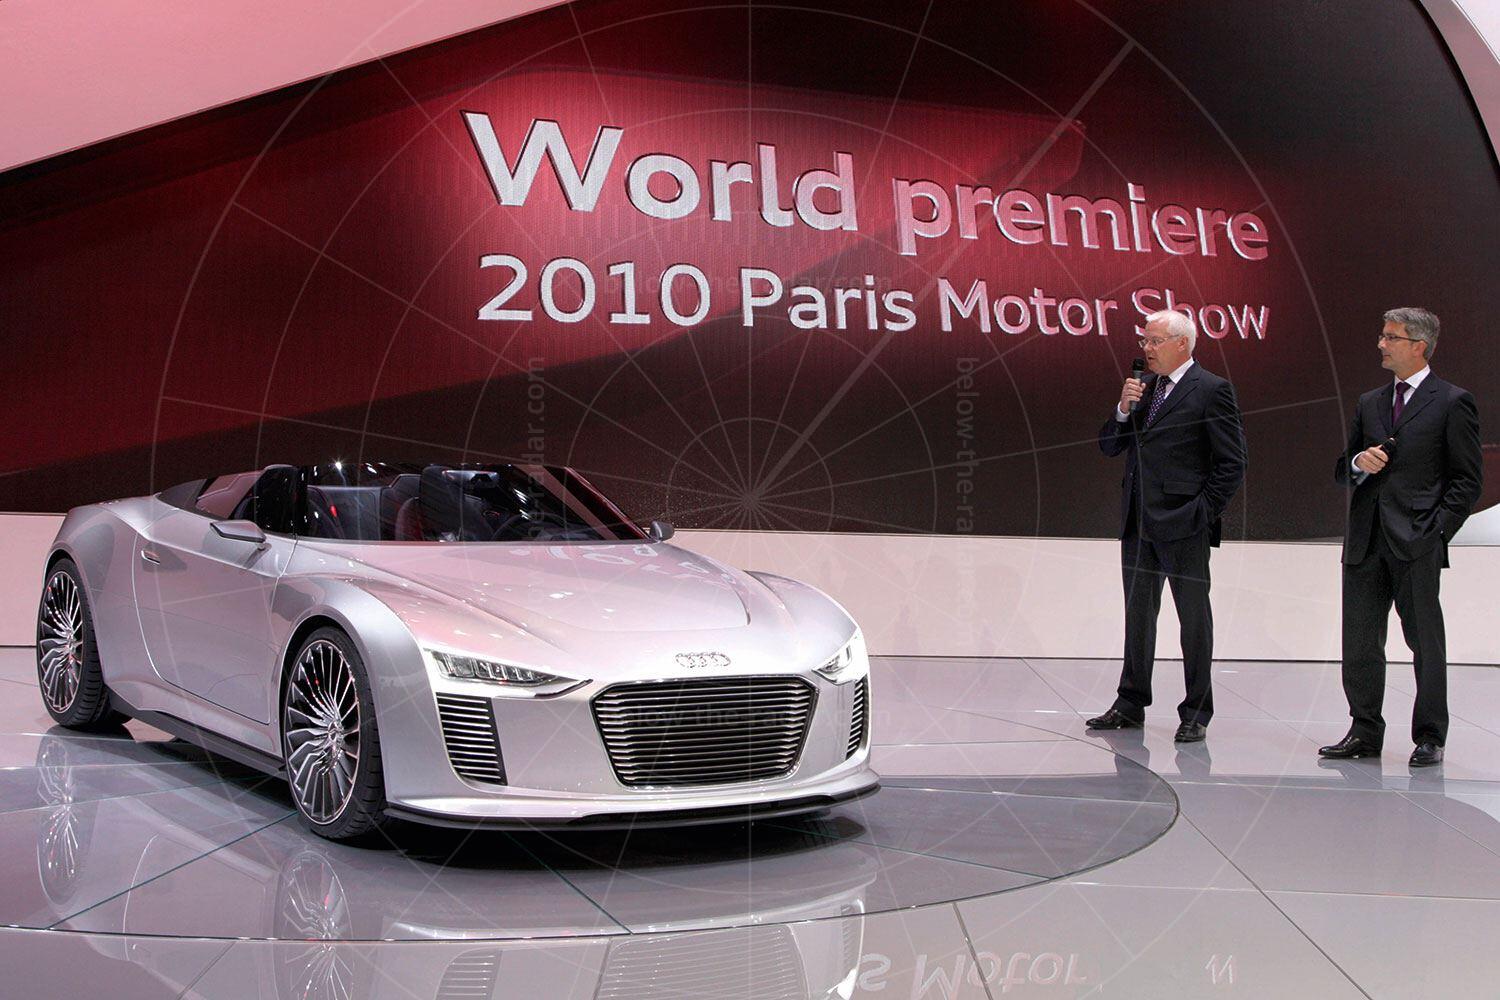 Audi e-tron Spyder making its debut Pic: Audi | Audi e-tron Spyder making its debut